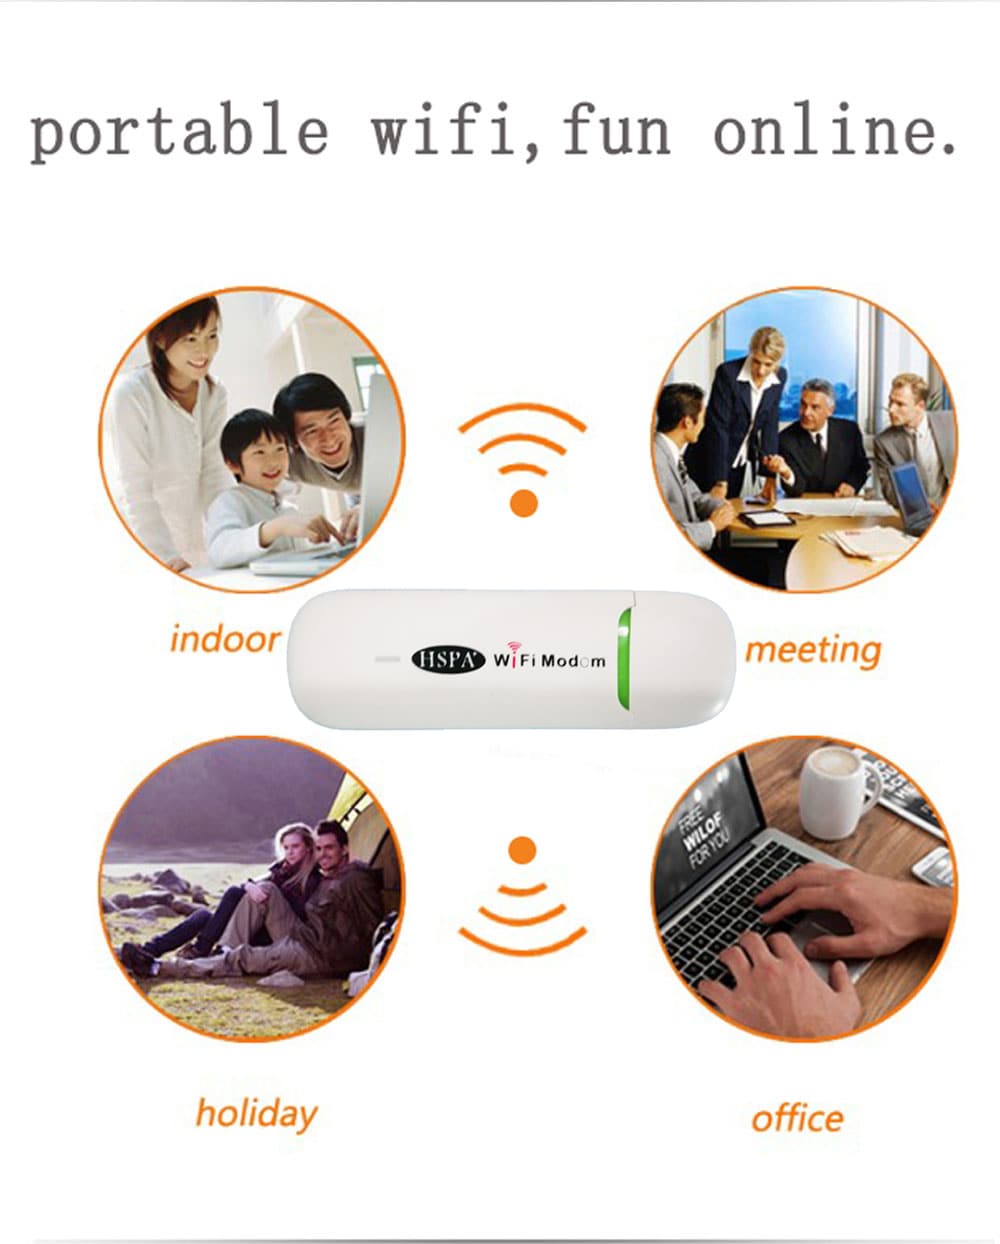 USB 3G WiFi Hotspot Wireless WCDMA Modems With SIM Card Slot- White